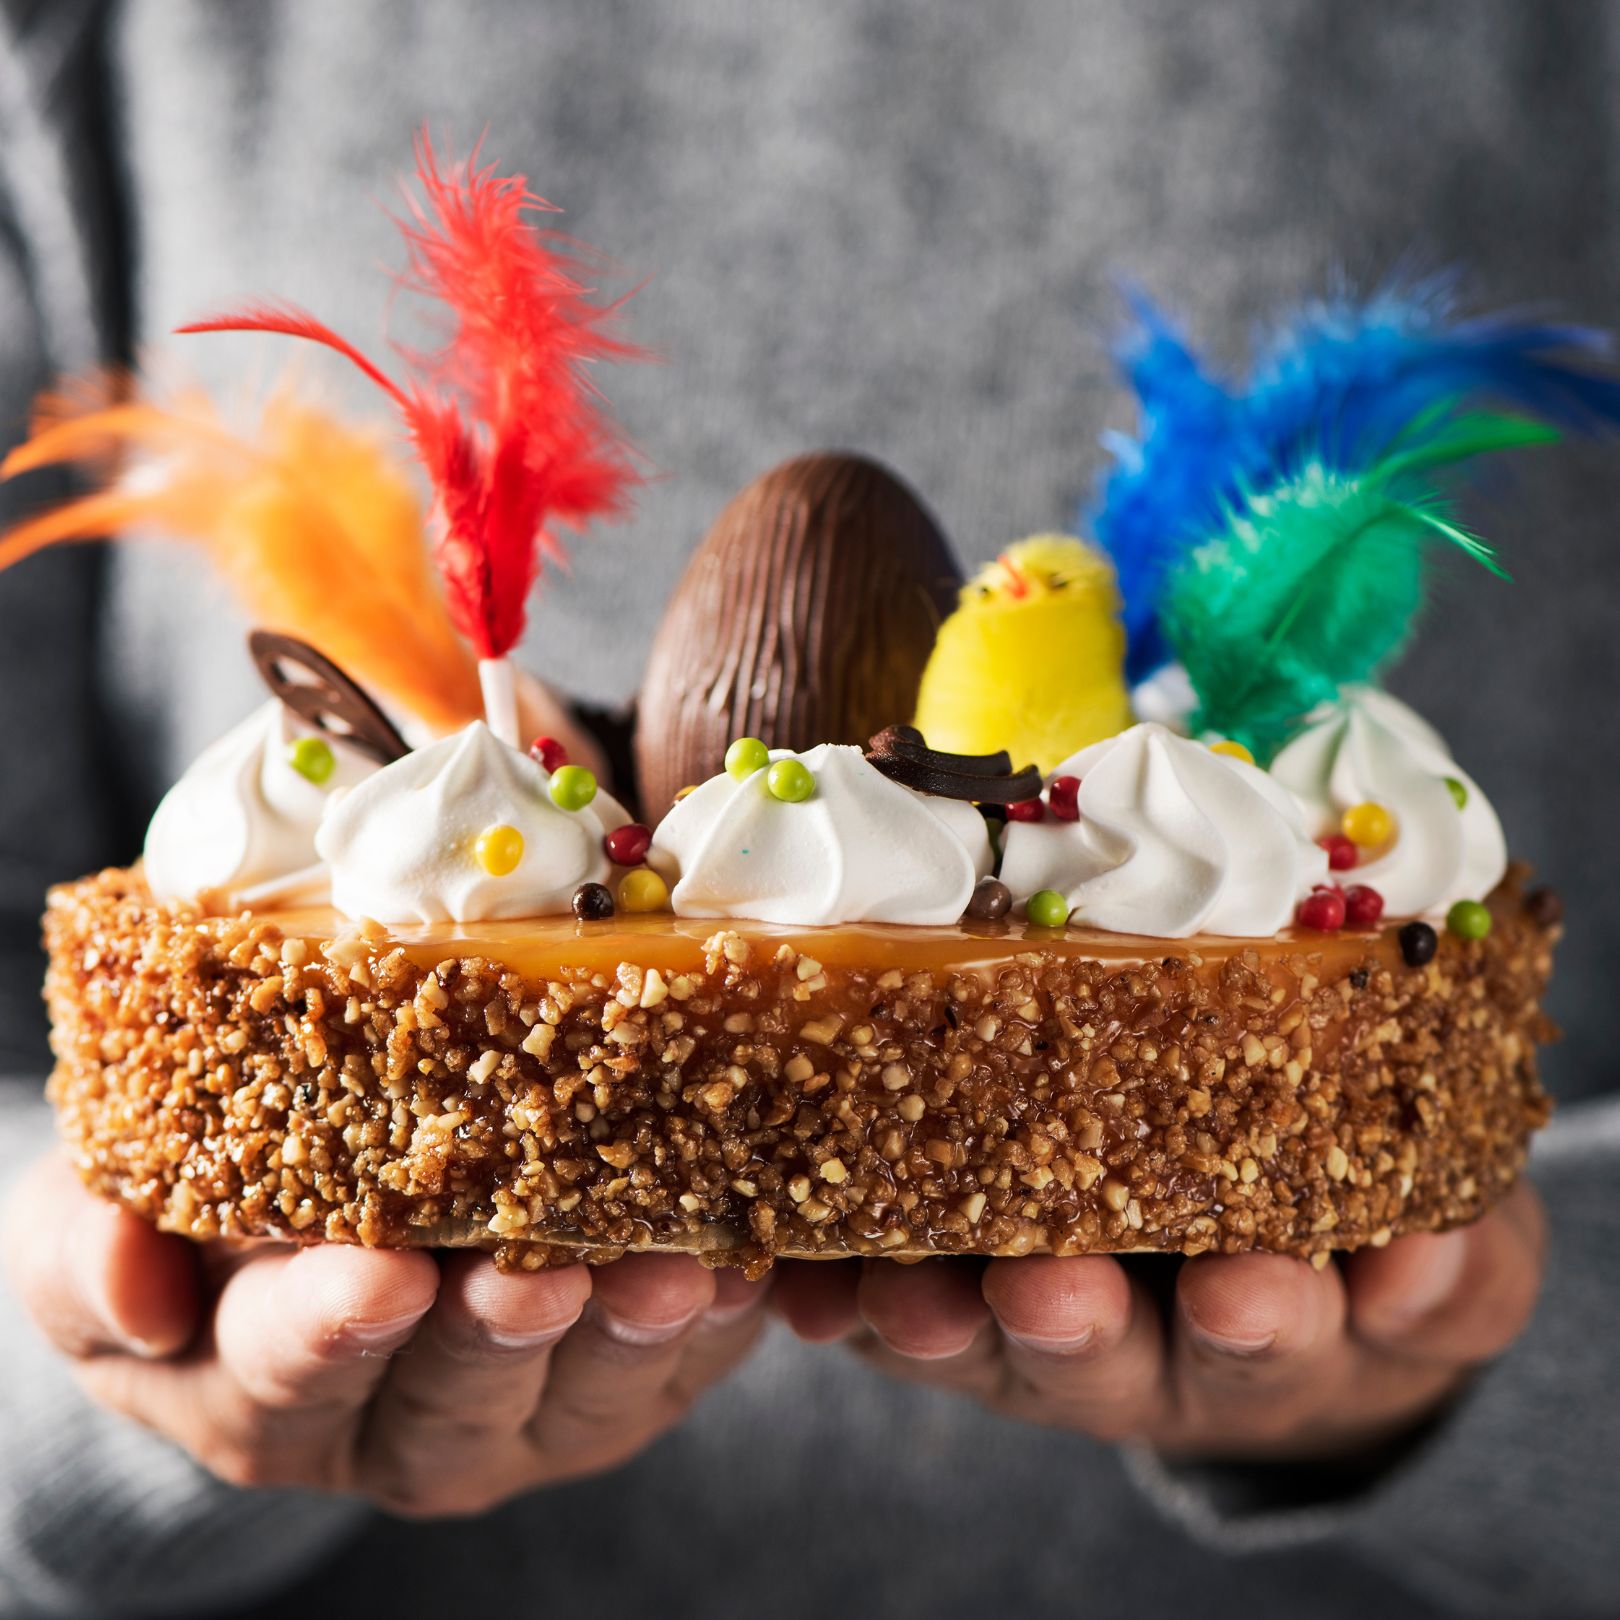 Ous i elaboracions de xocolata per acompanyar el pastís tradicional de la mona de Pasqua